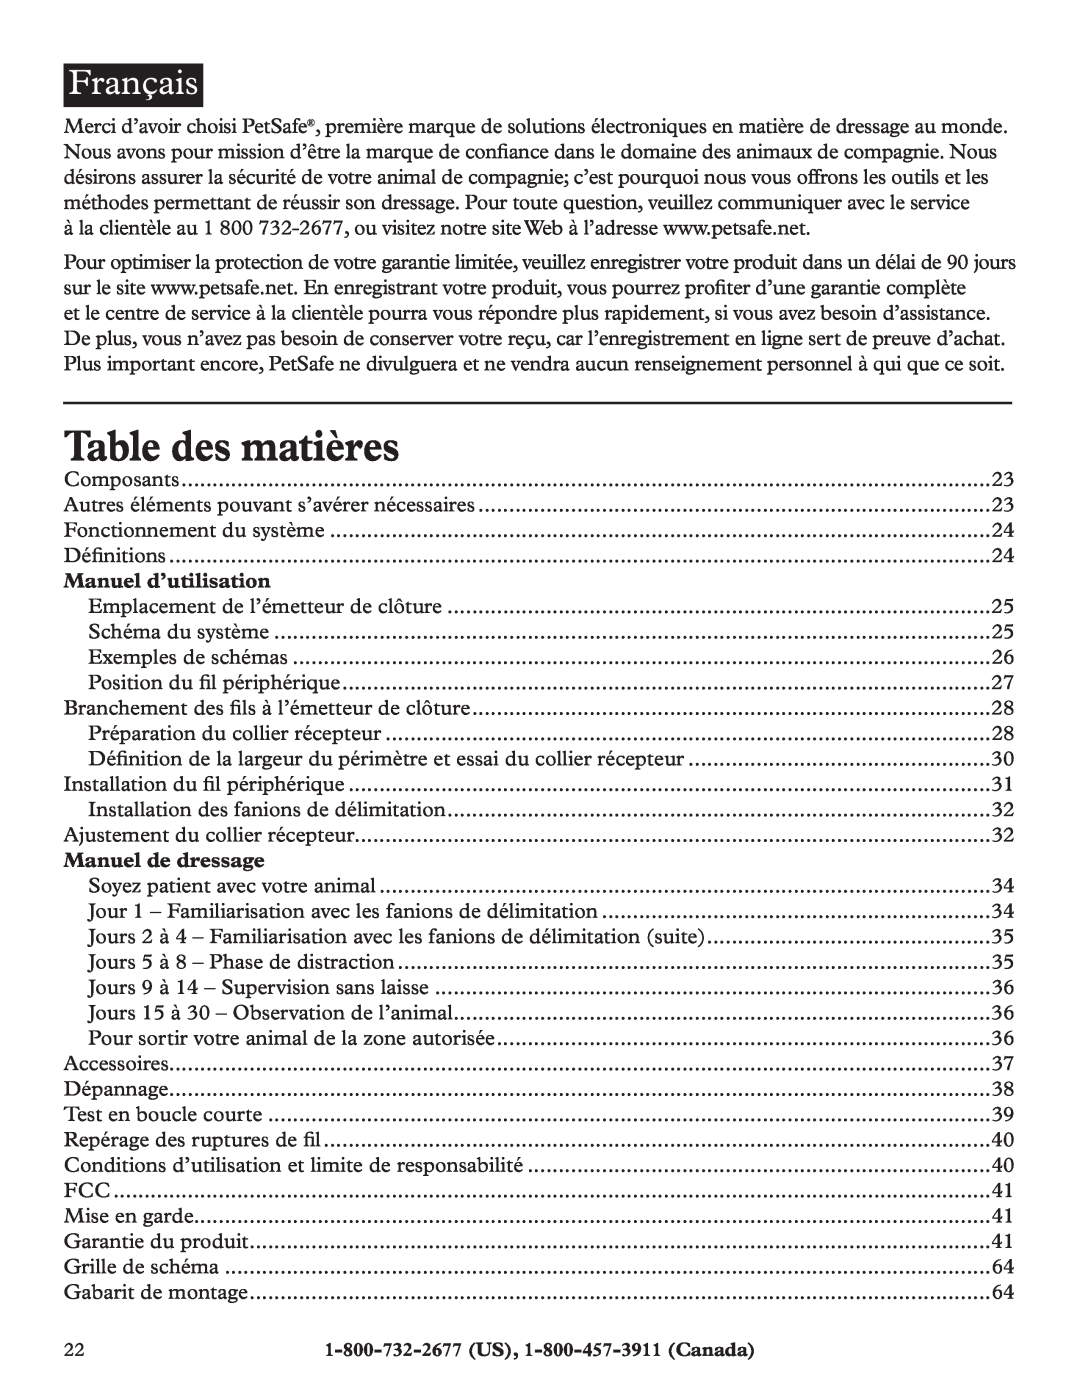 Petsafe RFA-200 manual Table des matières, Français, Manuel d’utilisation, Manuel de dressage 